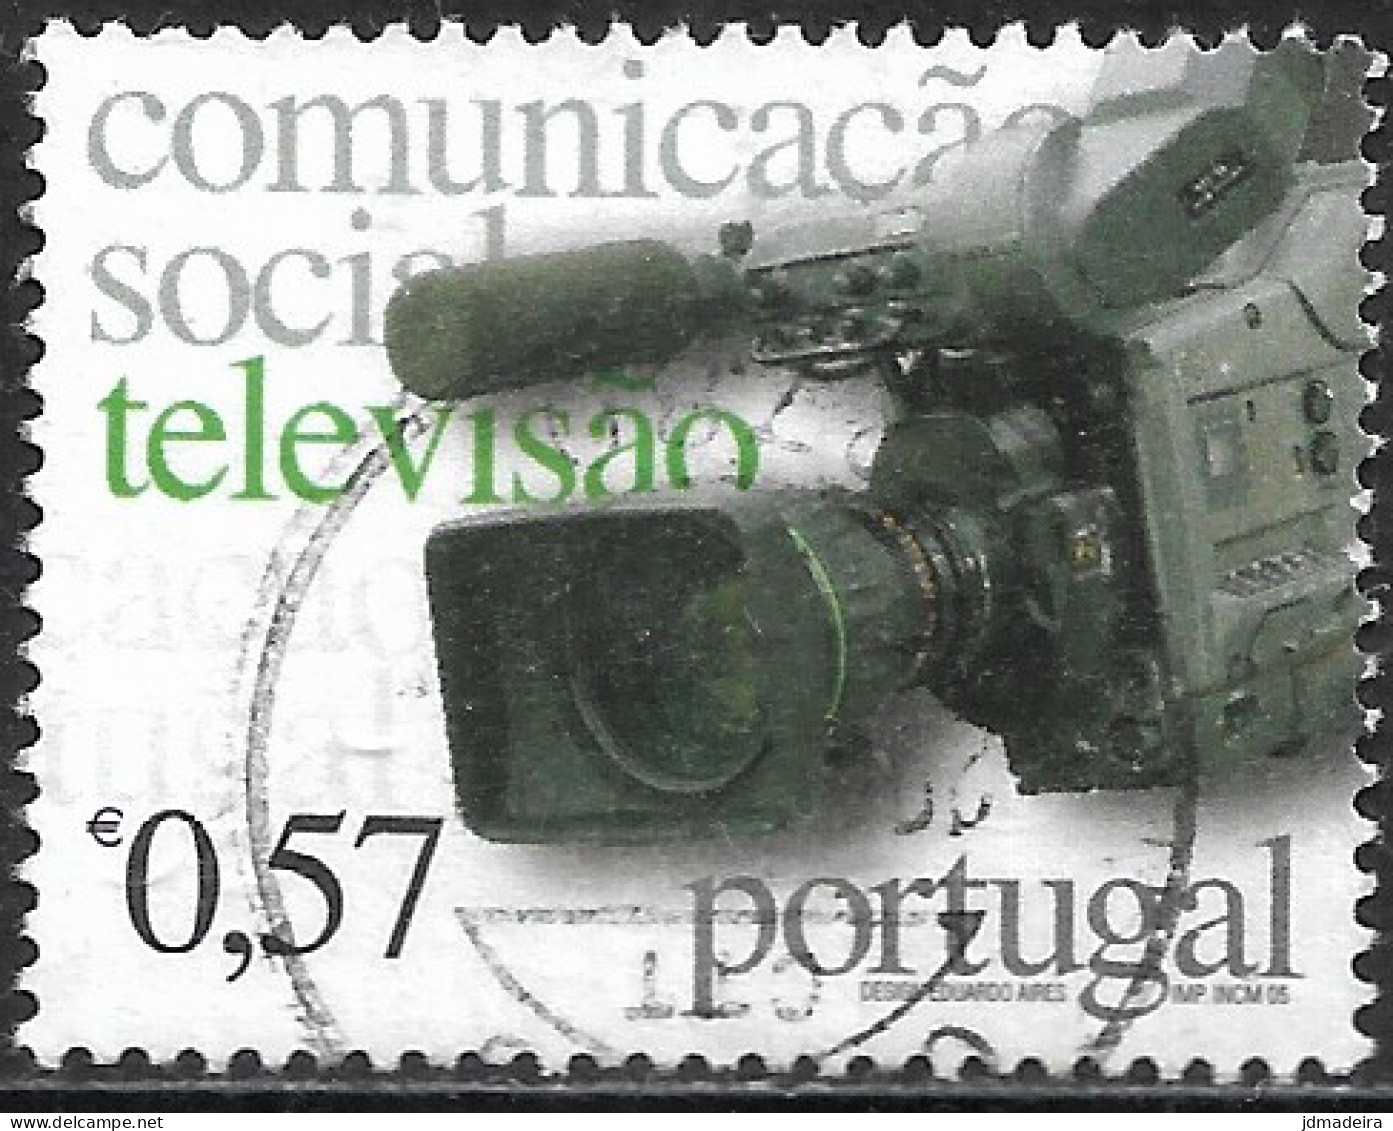 Portugal – 2005 Media 0,57 Used Stamp - Oblitérés